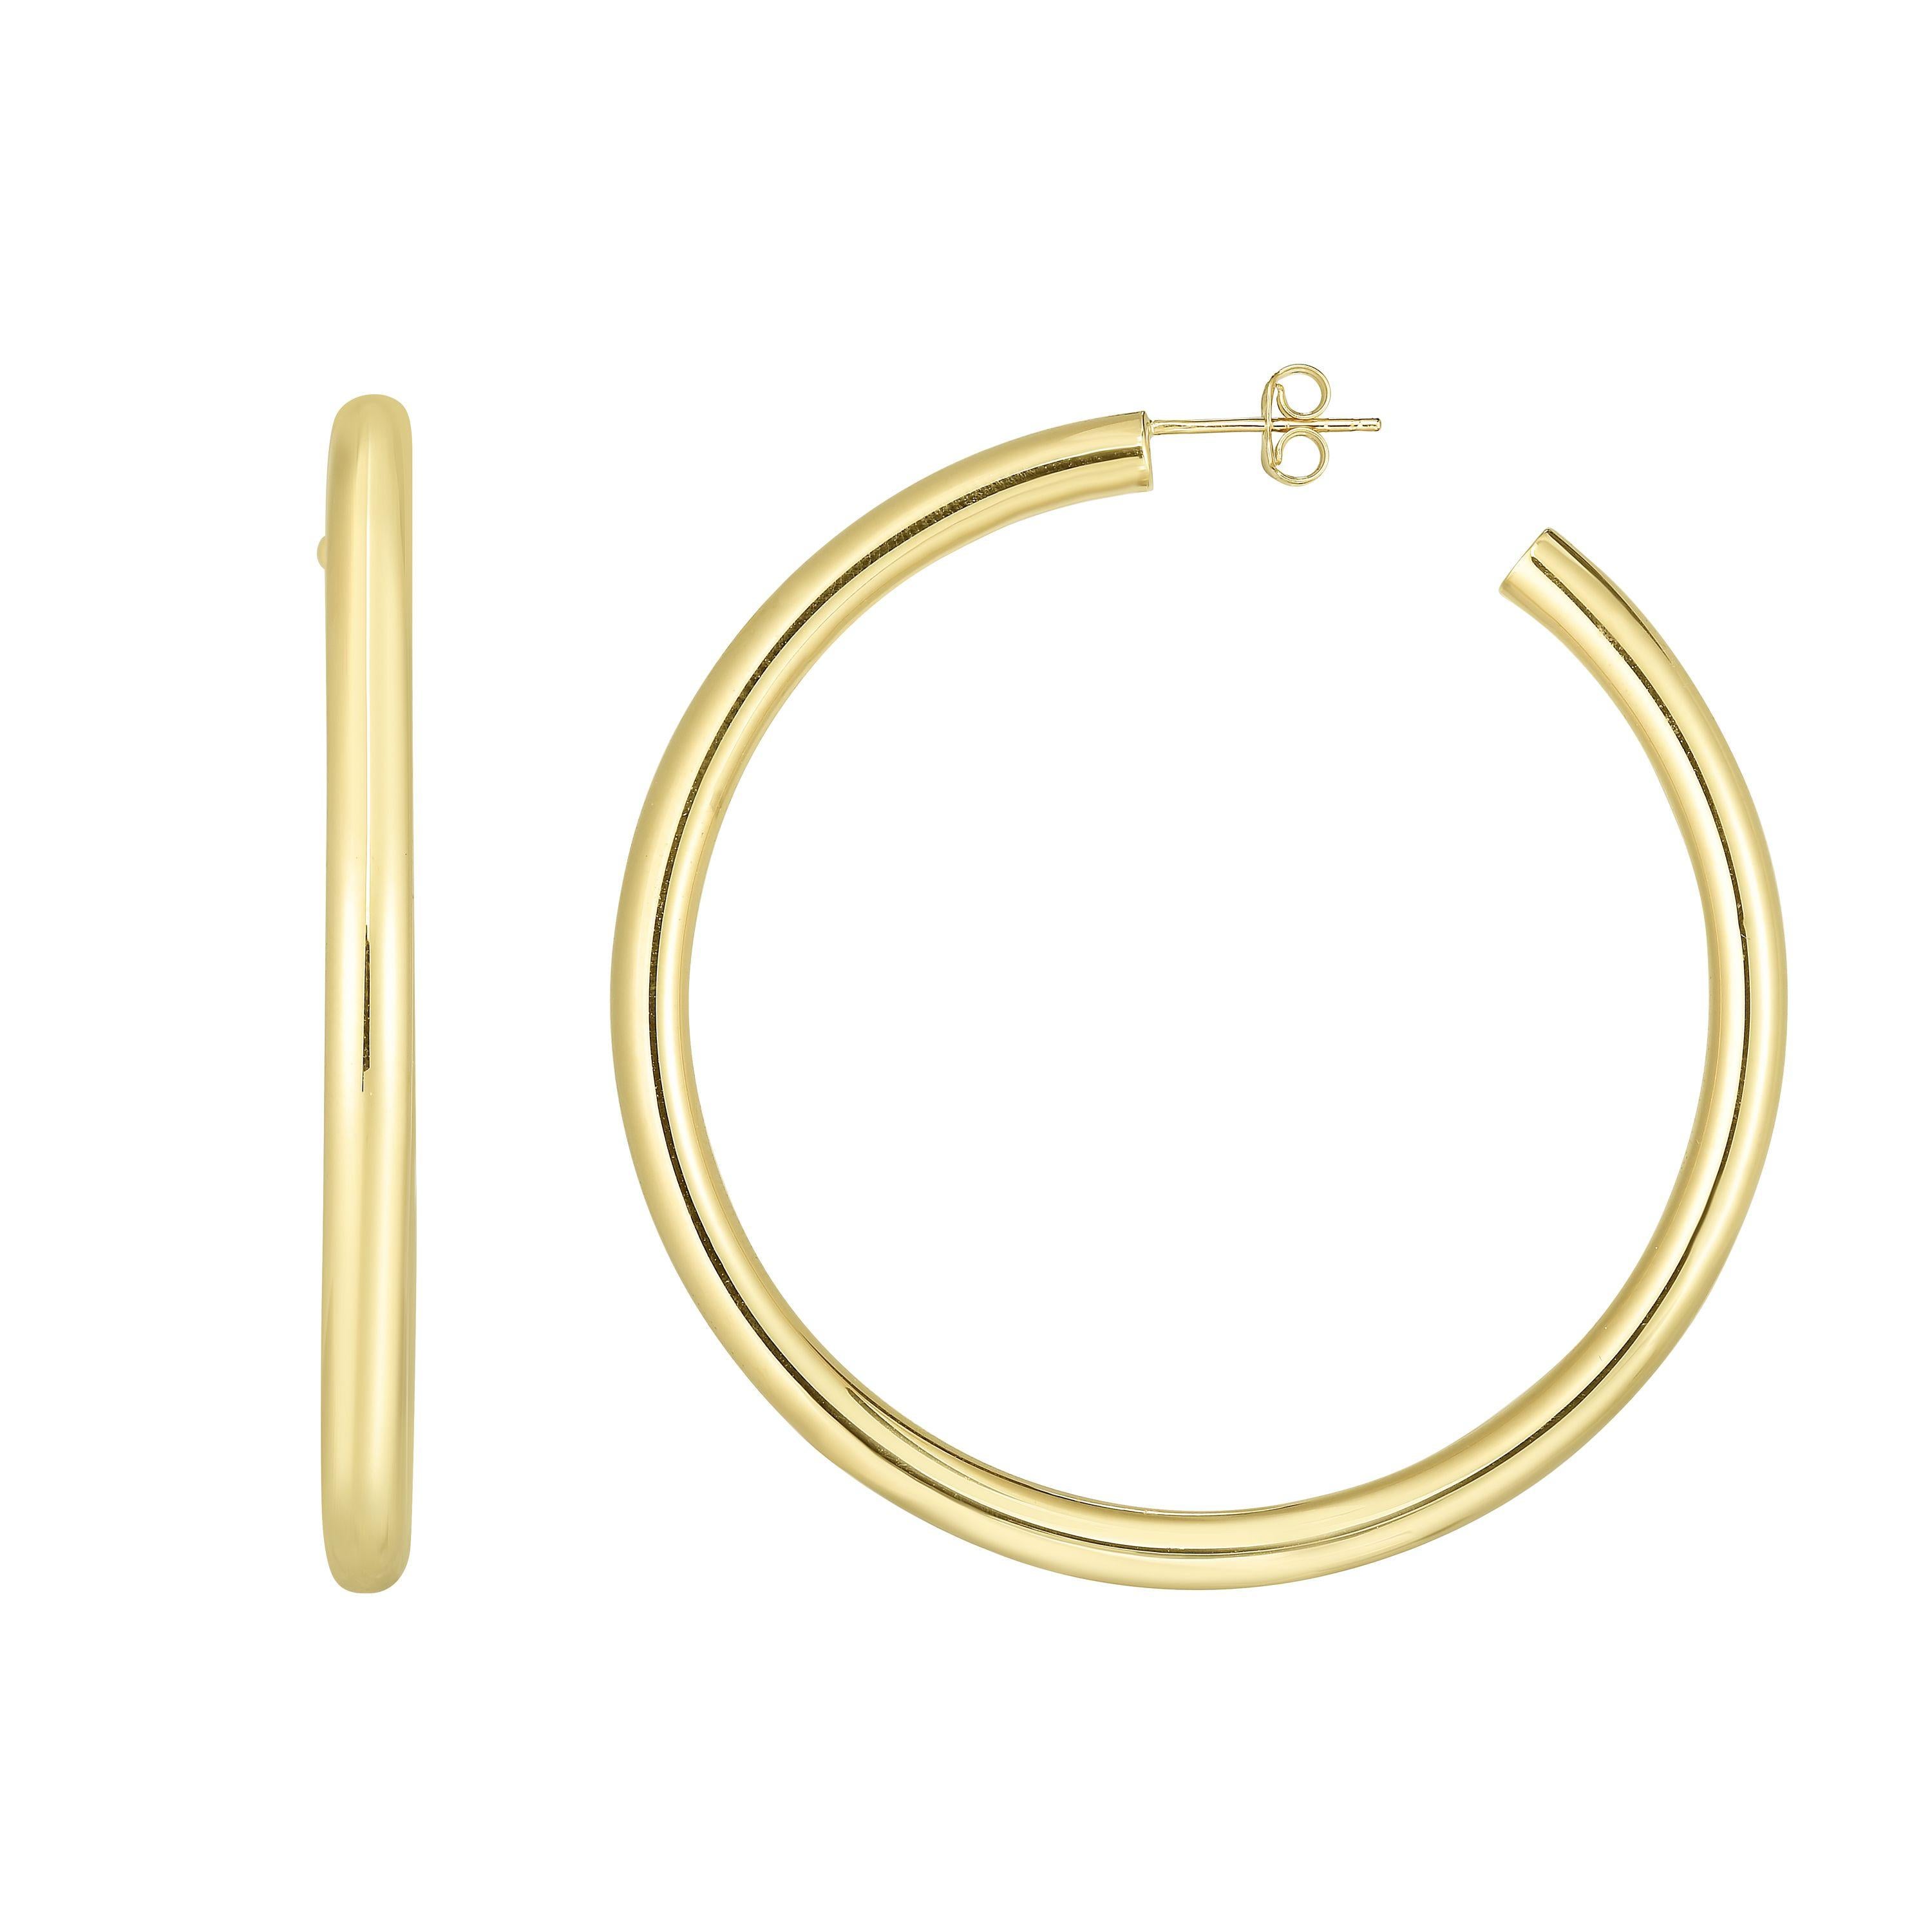 Modern Large Yellow Gold Hoop Earrings 2.25 Inch Diameter 4 Millimeter Width